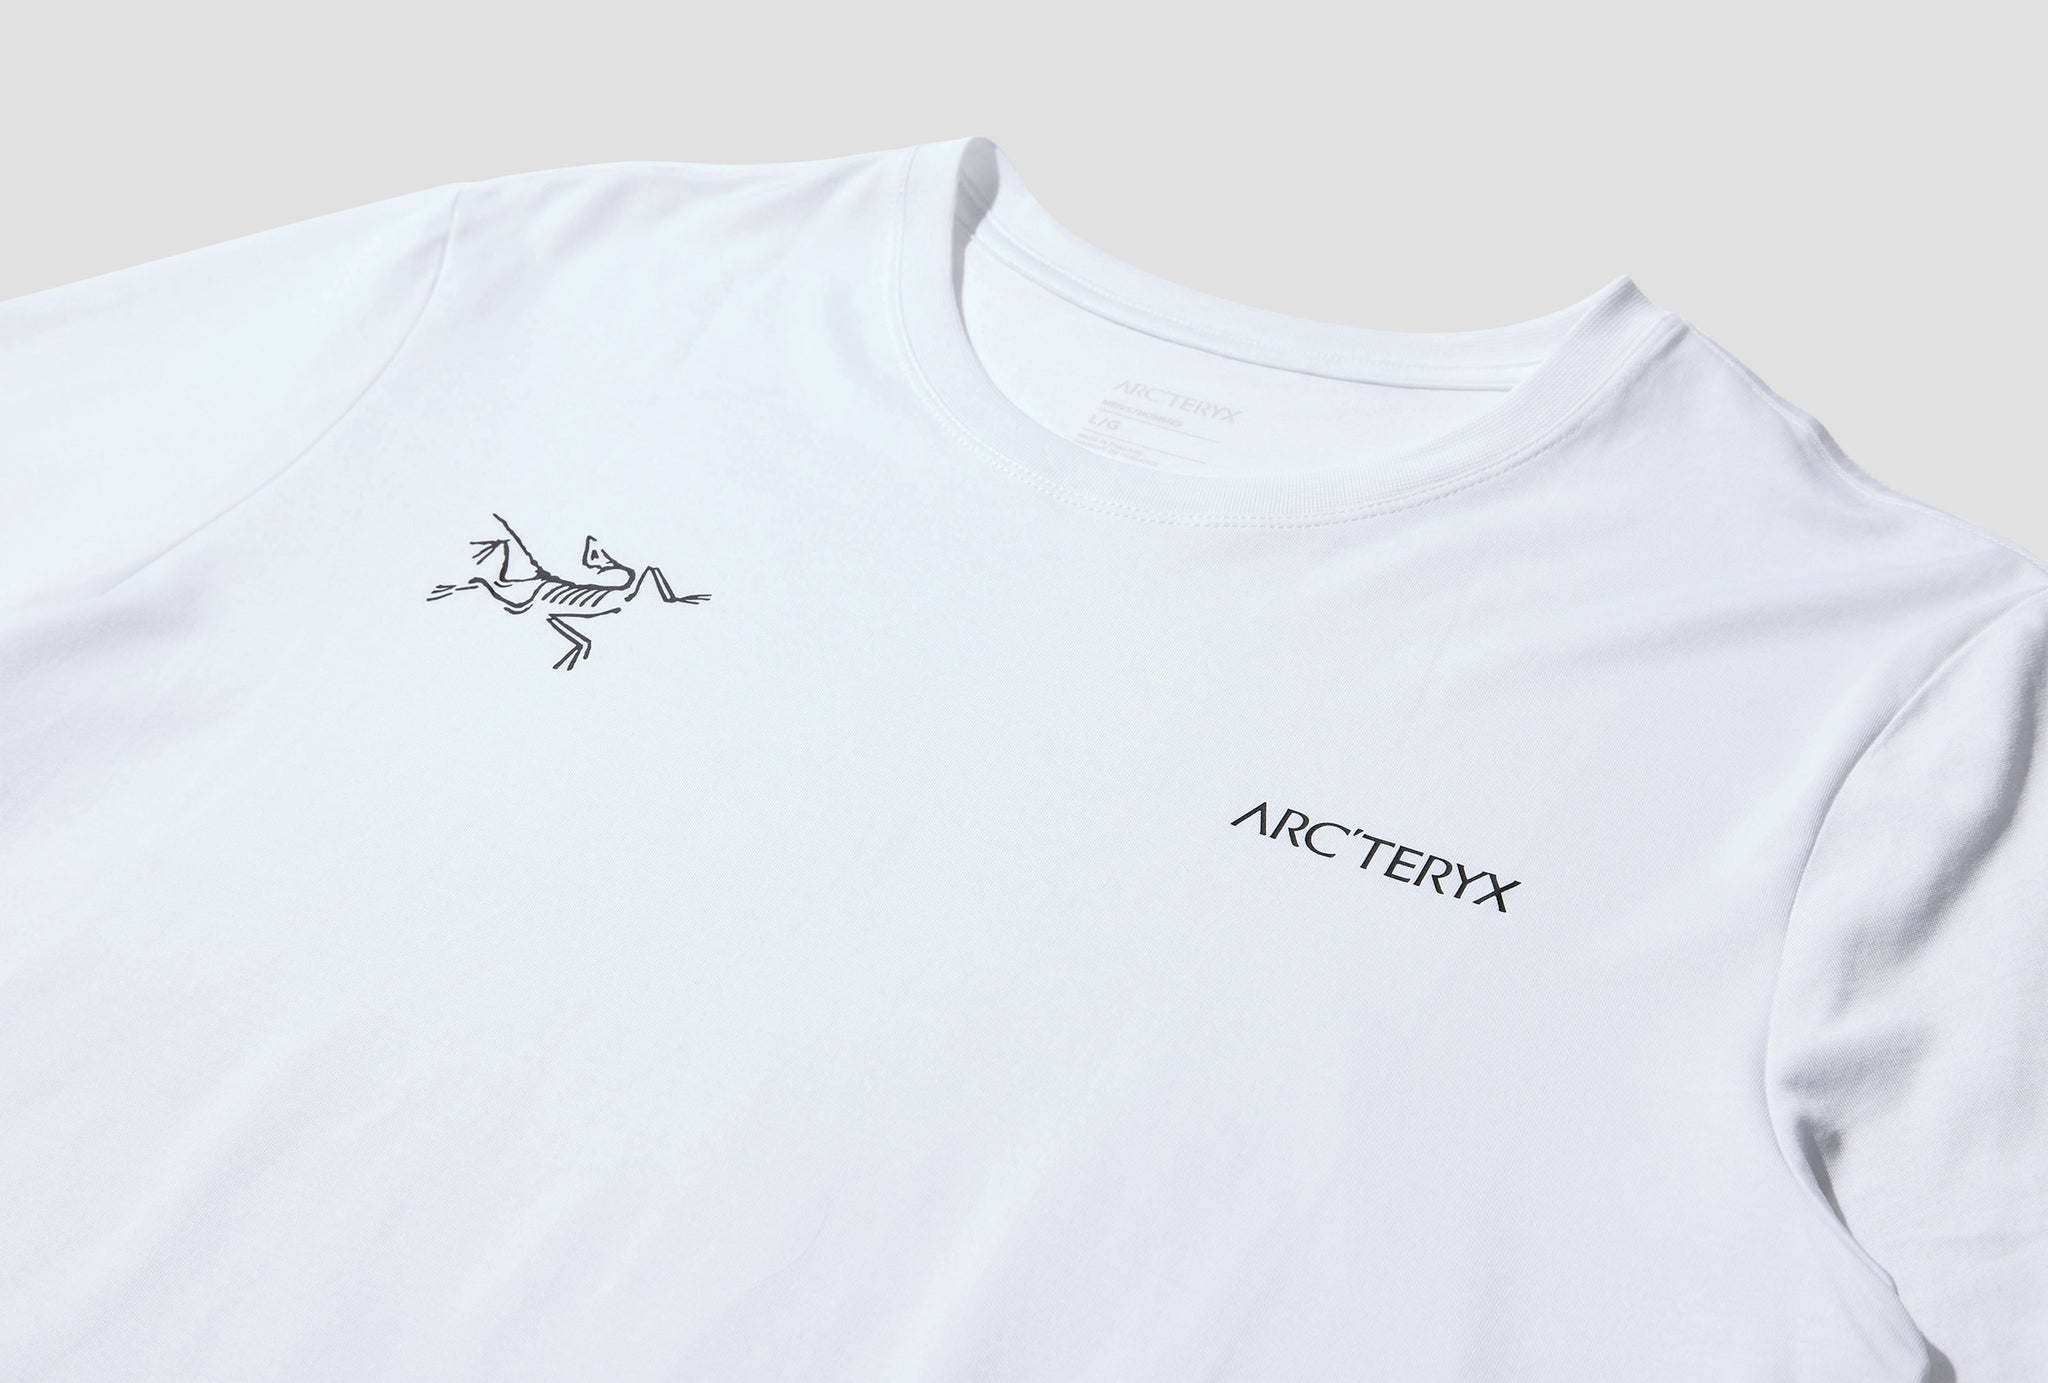 Arc'teryx Split SS T-shirt camiseta hombre